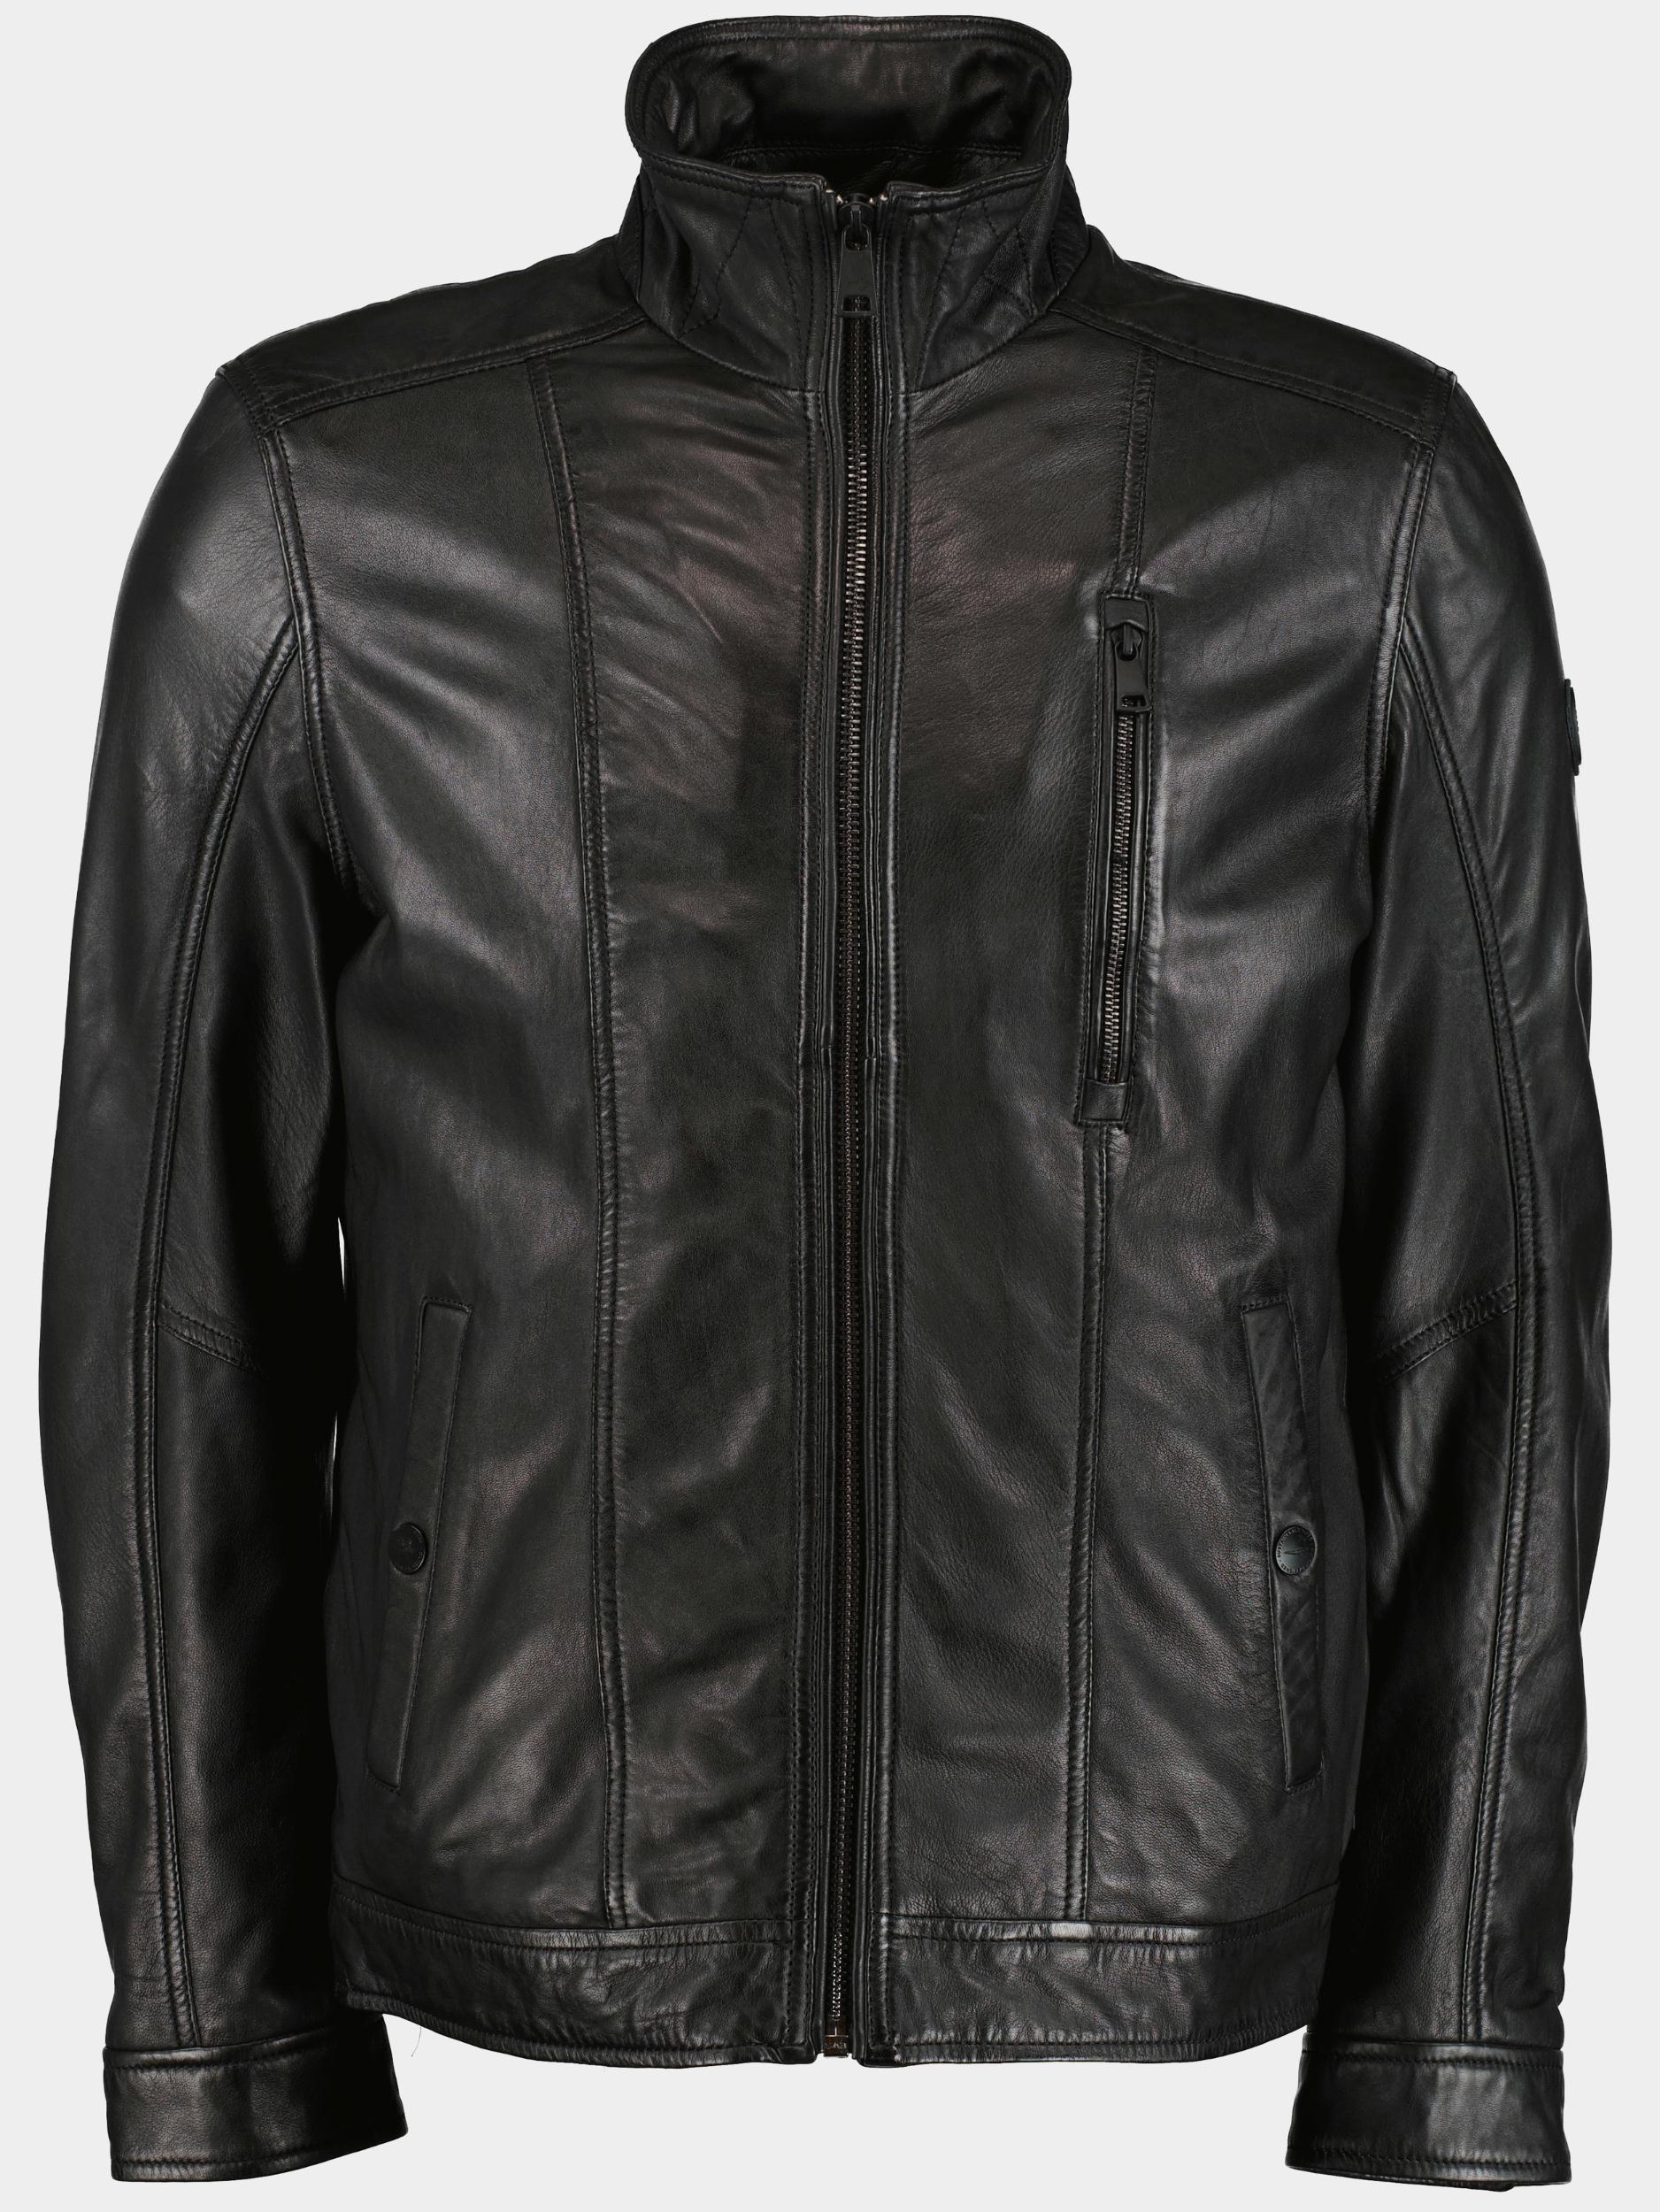 DNR Lederen jack Zwart Leather Jacket 52349.2 999